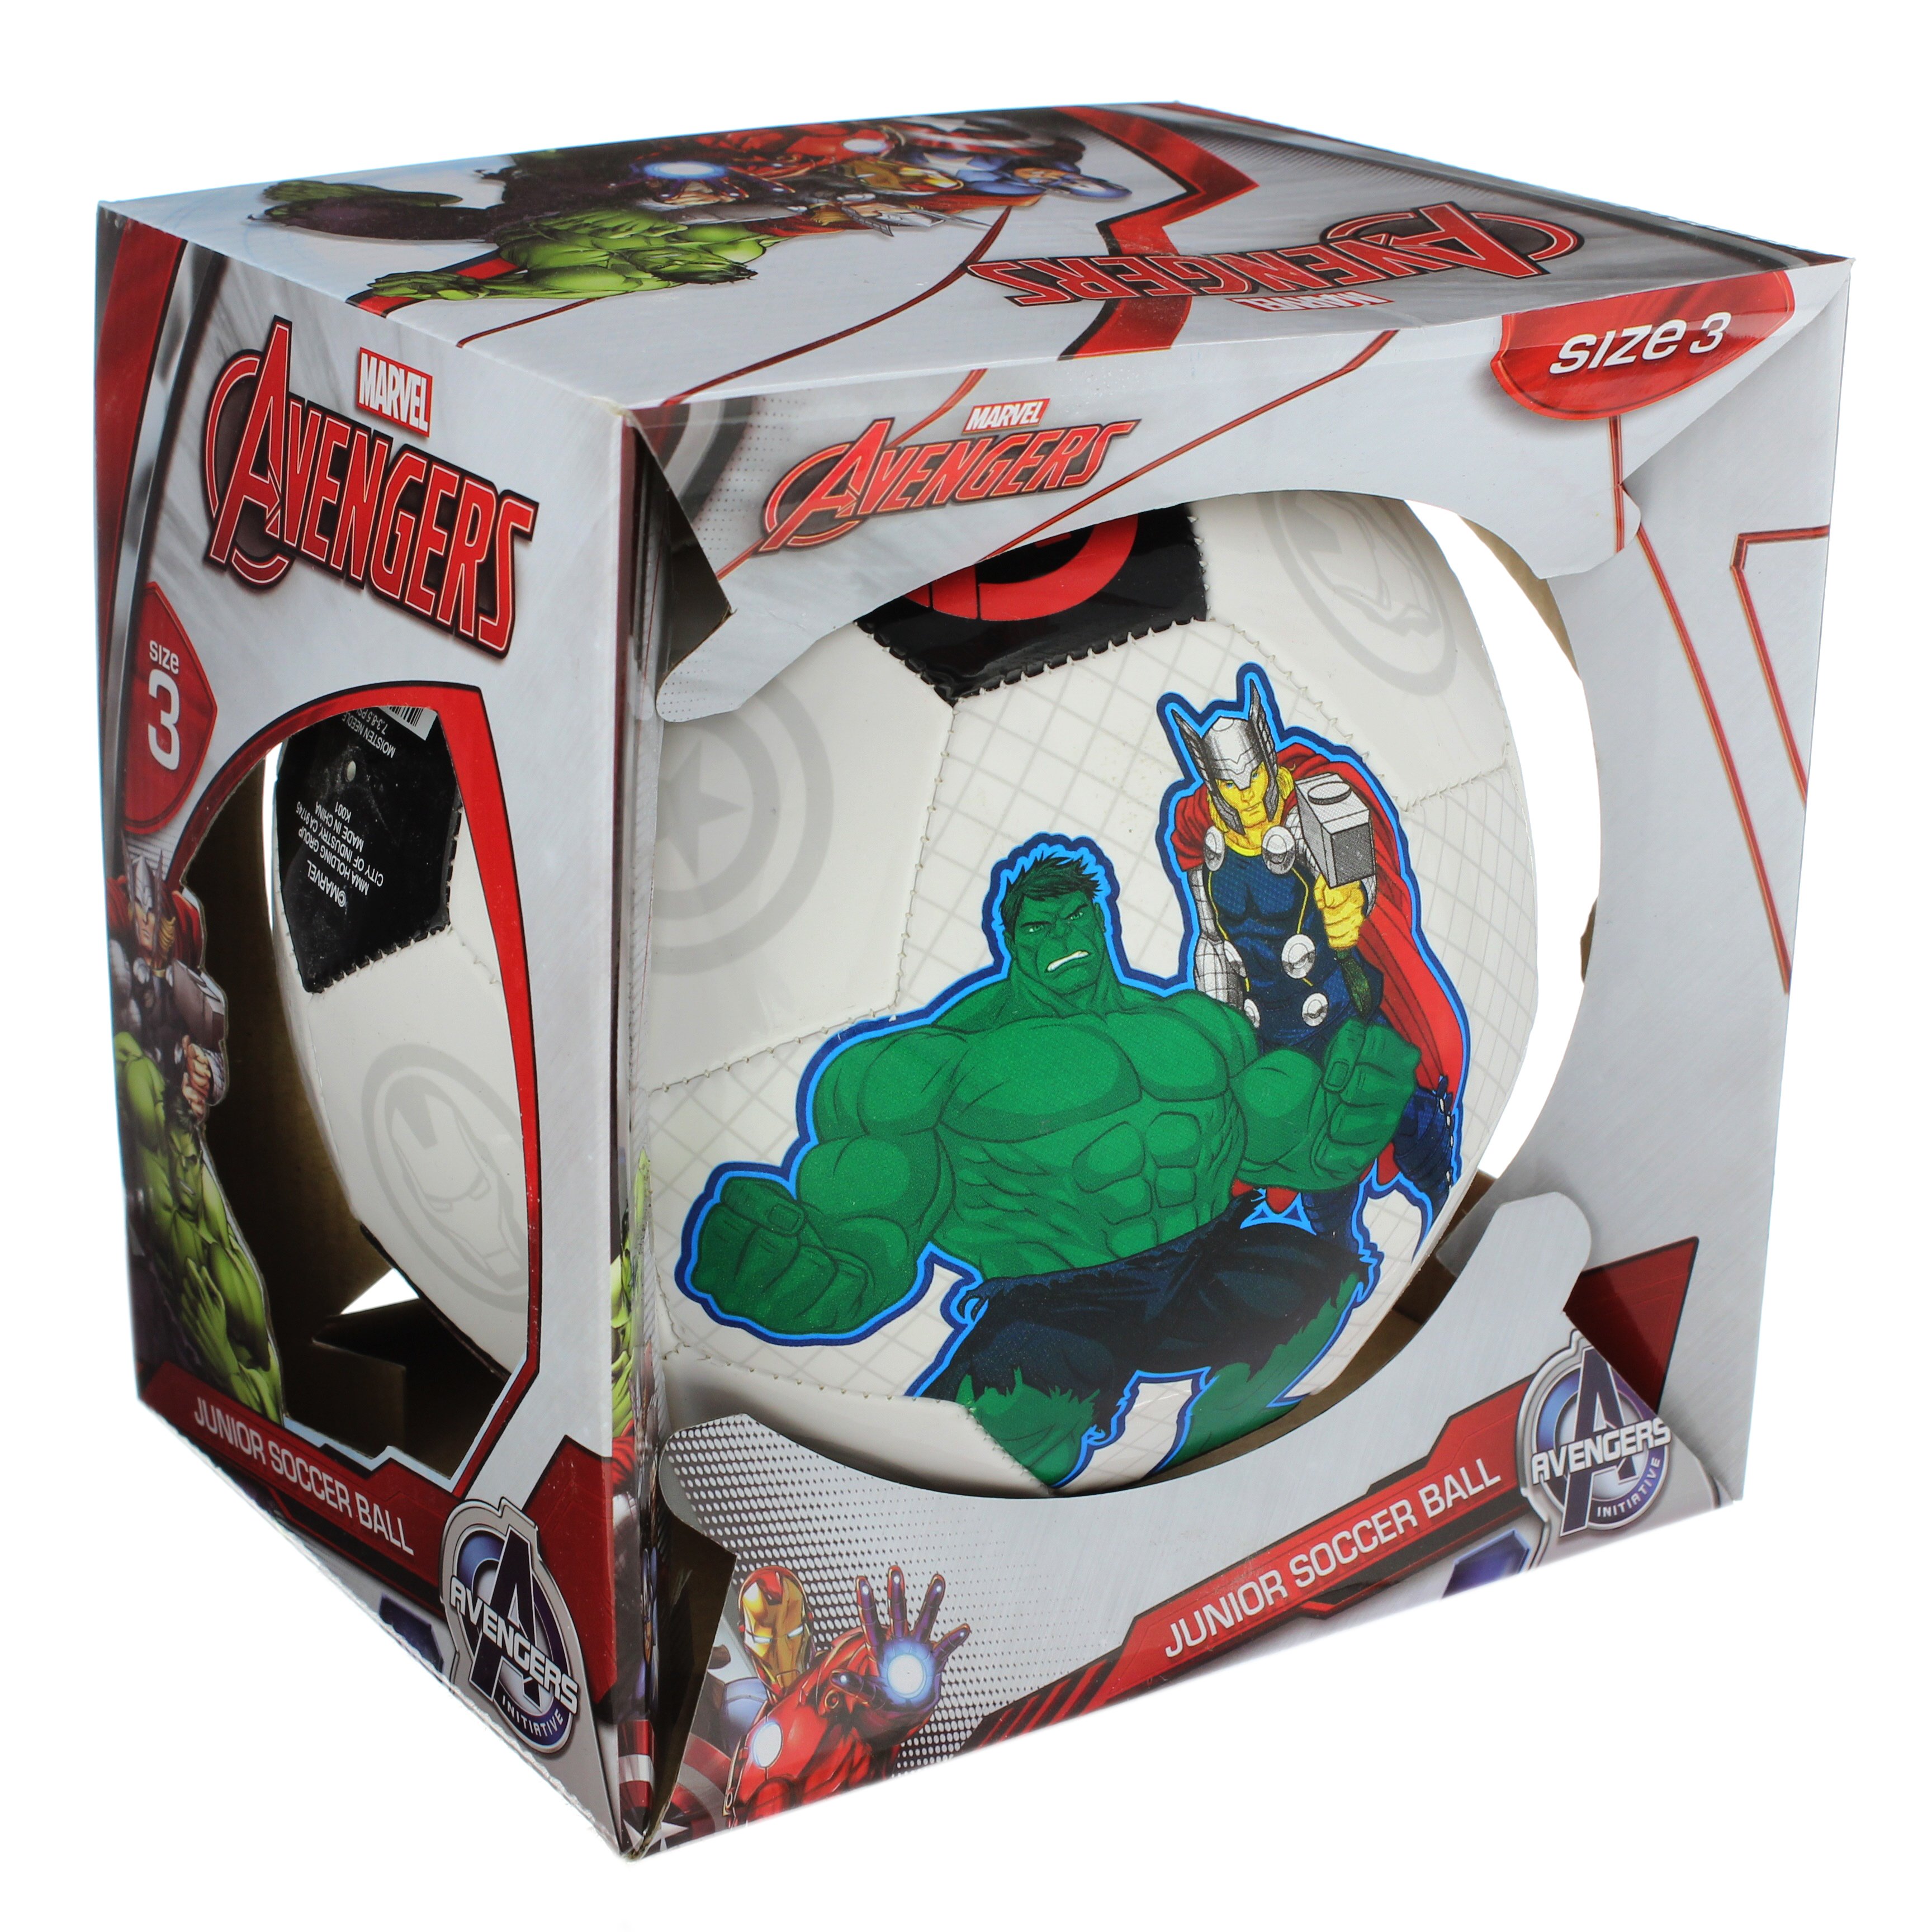  Marvel Avengers Soccer Ball Size 5, Captain America